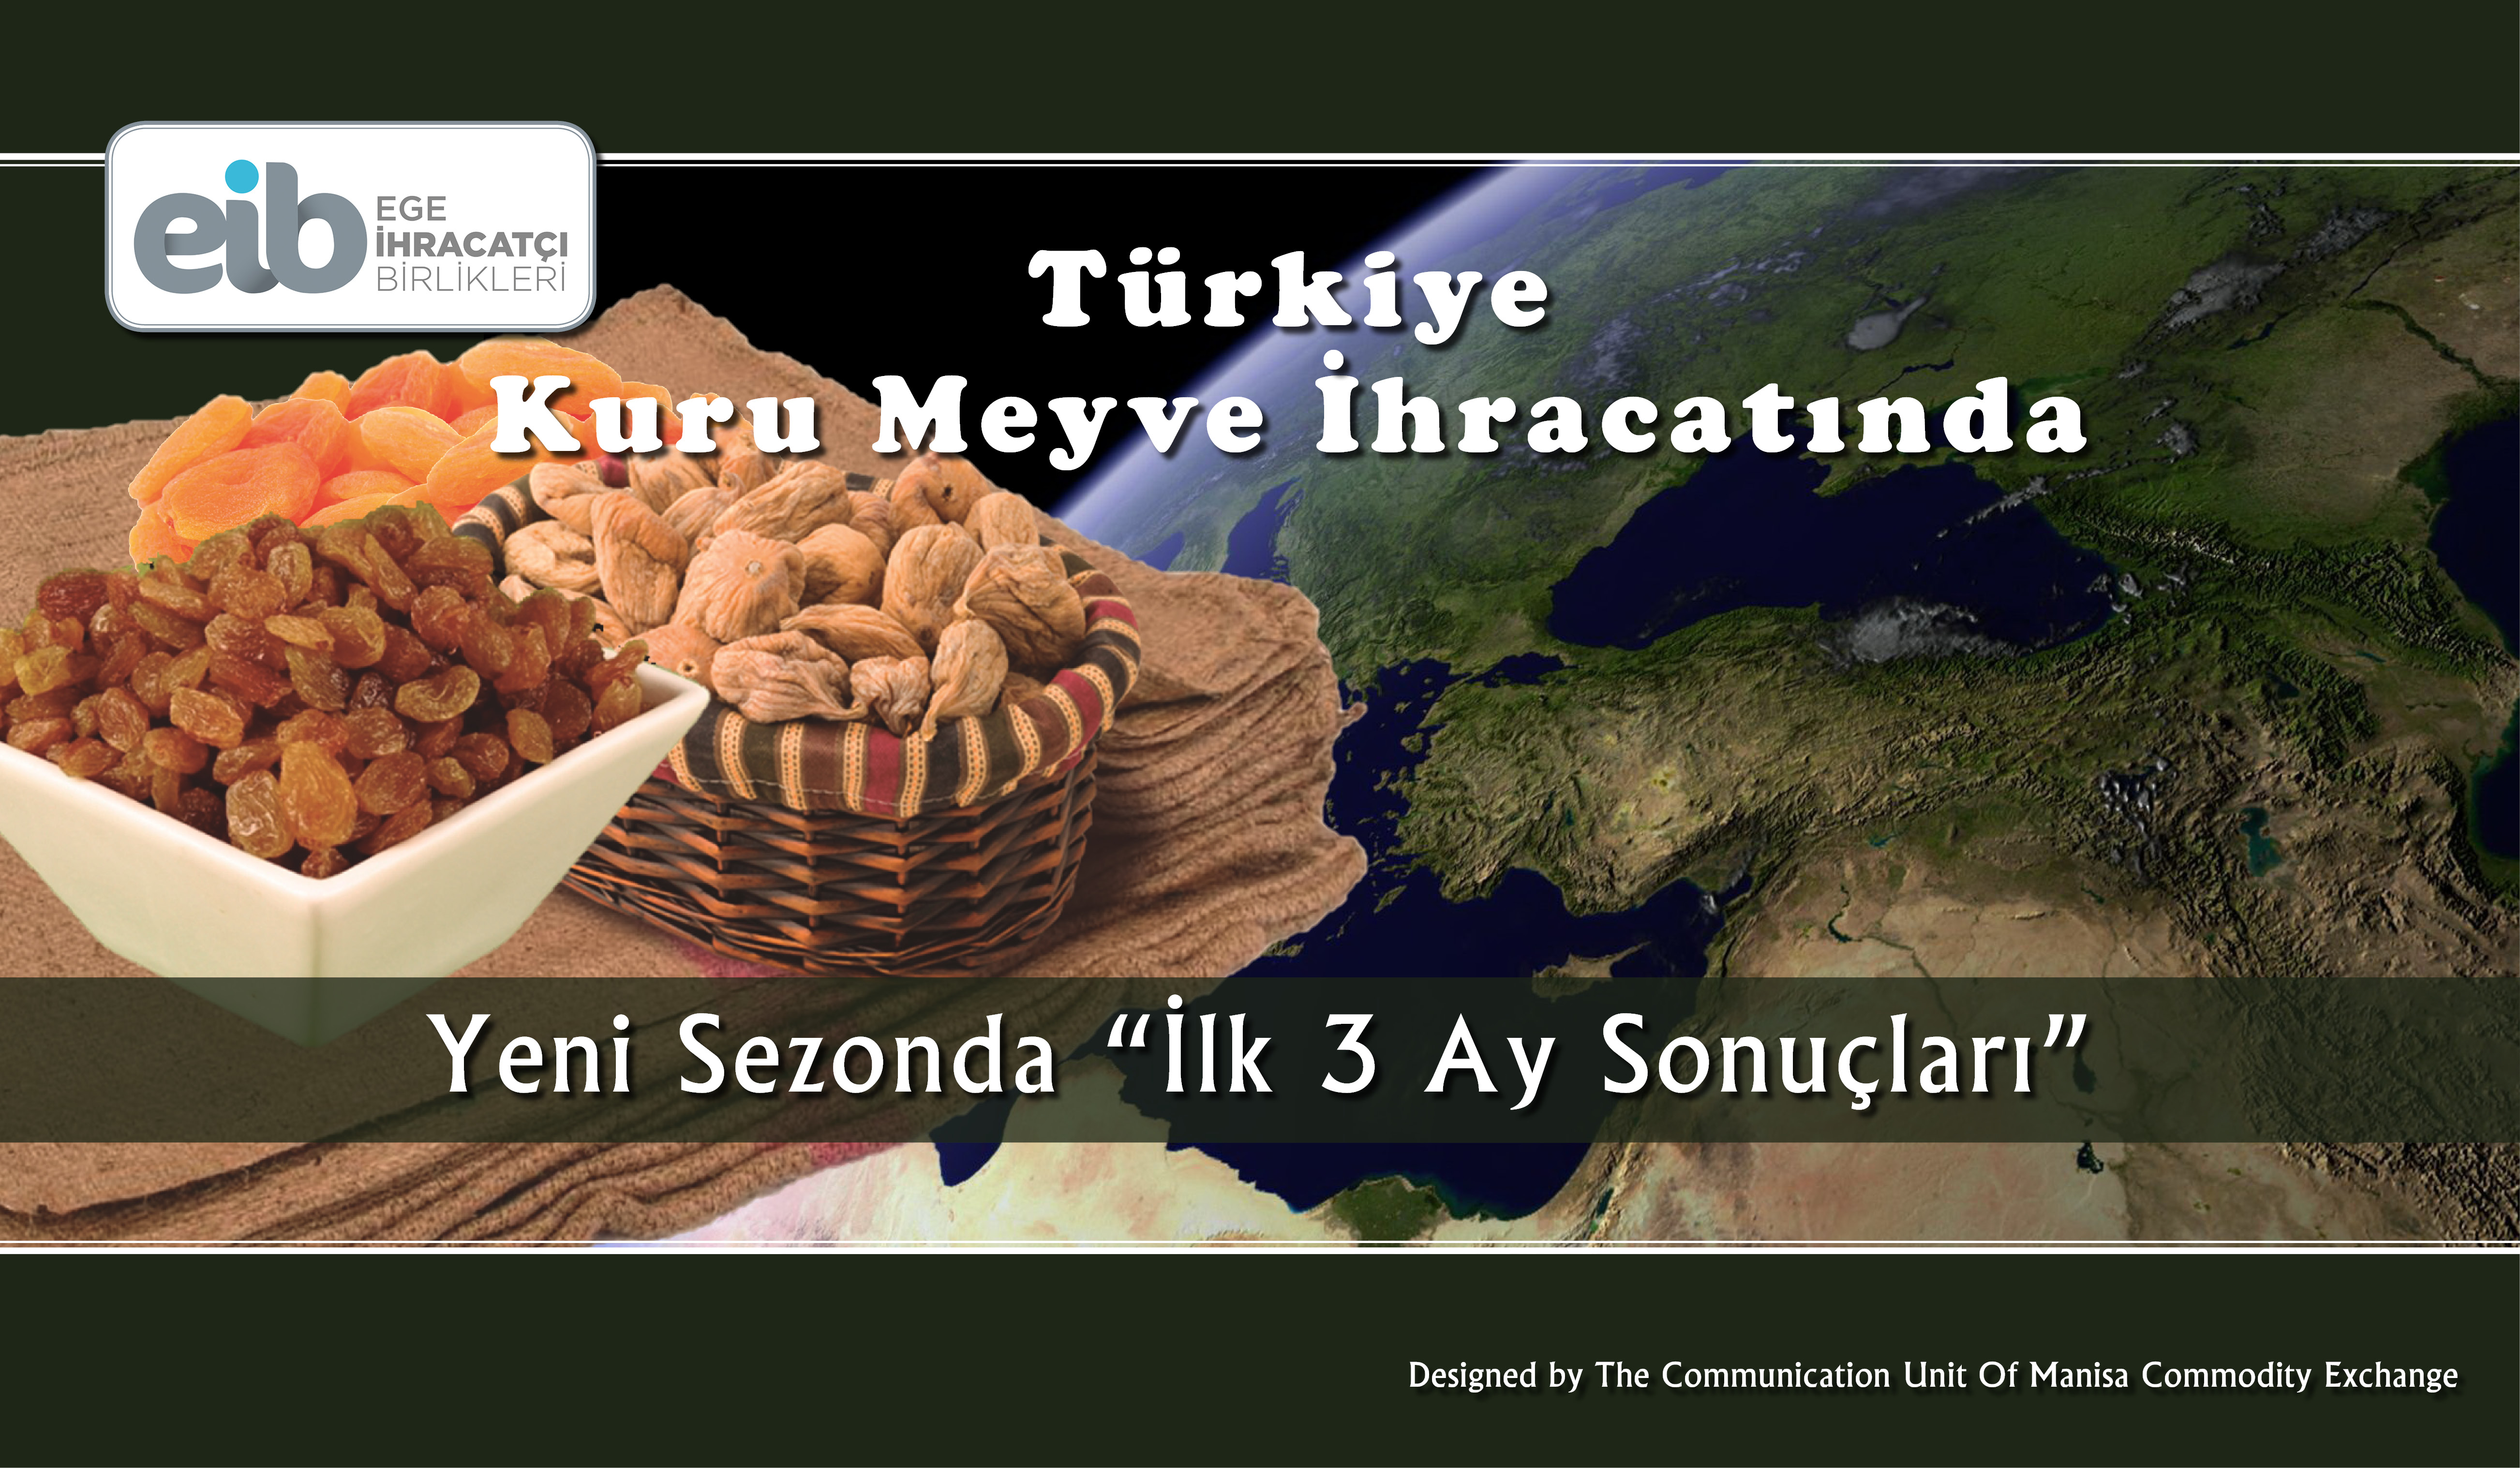 Kuru zm, Kays ve ncir hracat, Trkiye Ekonomisine Katksn Srdryor!